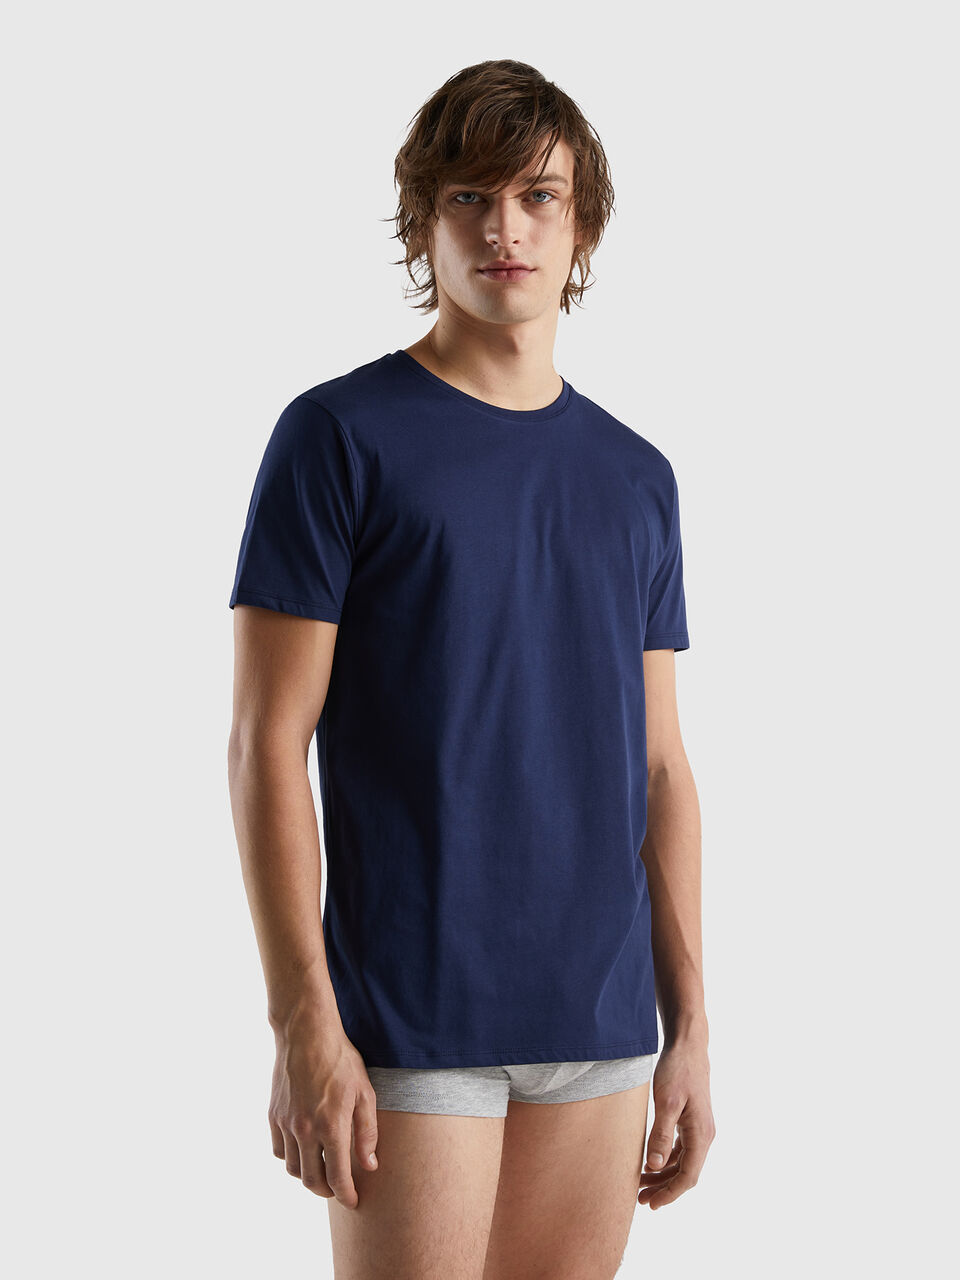 cotton Dark Long - t-shirt | Benetton Blue fiber